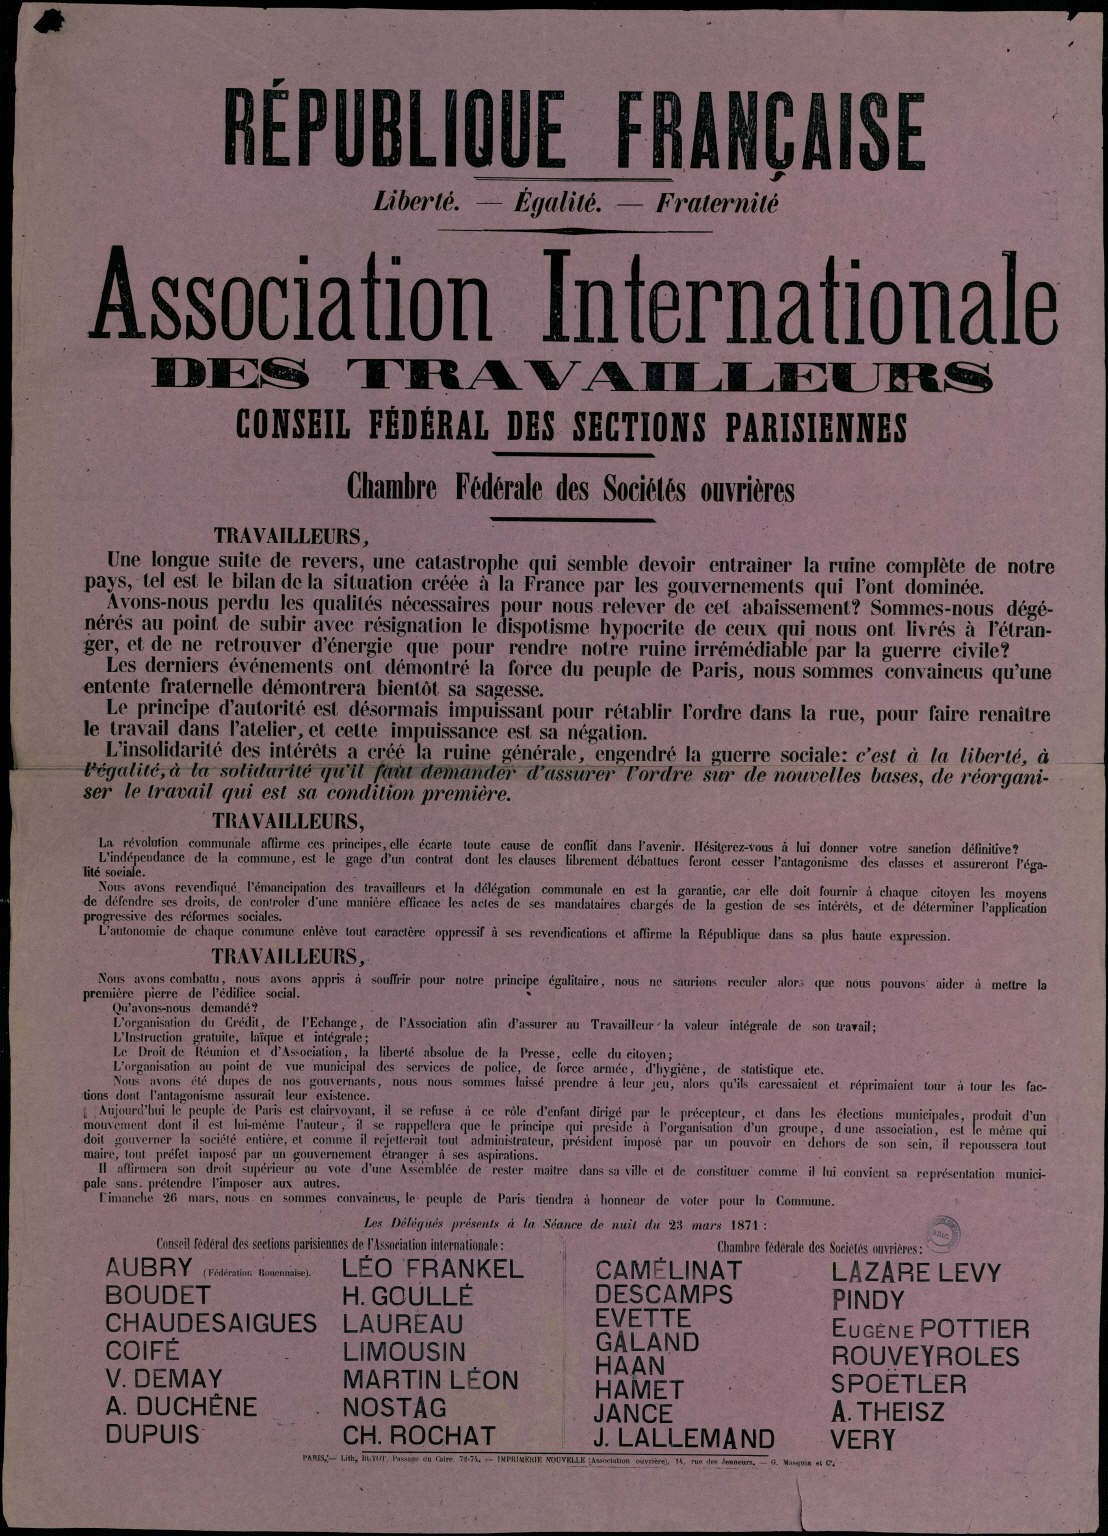 Affiche de l’Association Internationale des Travailleurs du 23 mars 1871 appelant les travailleurs à voter pour la Commune le 26 mars 1871.